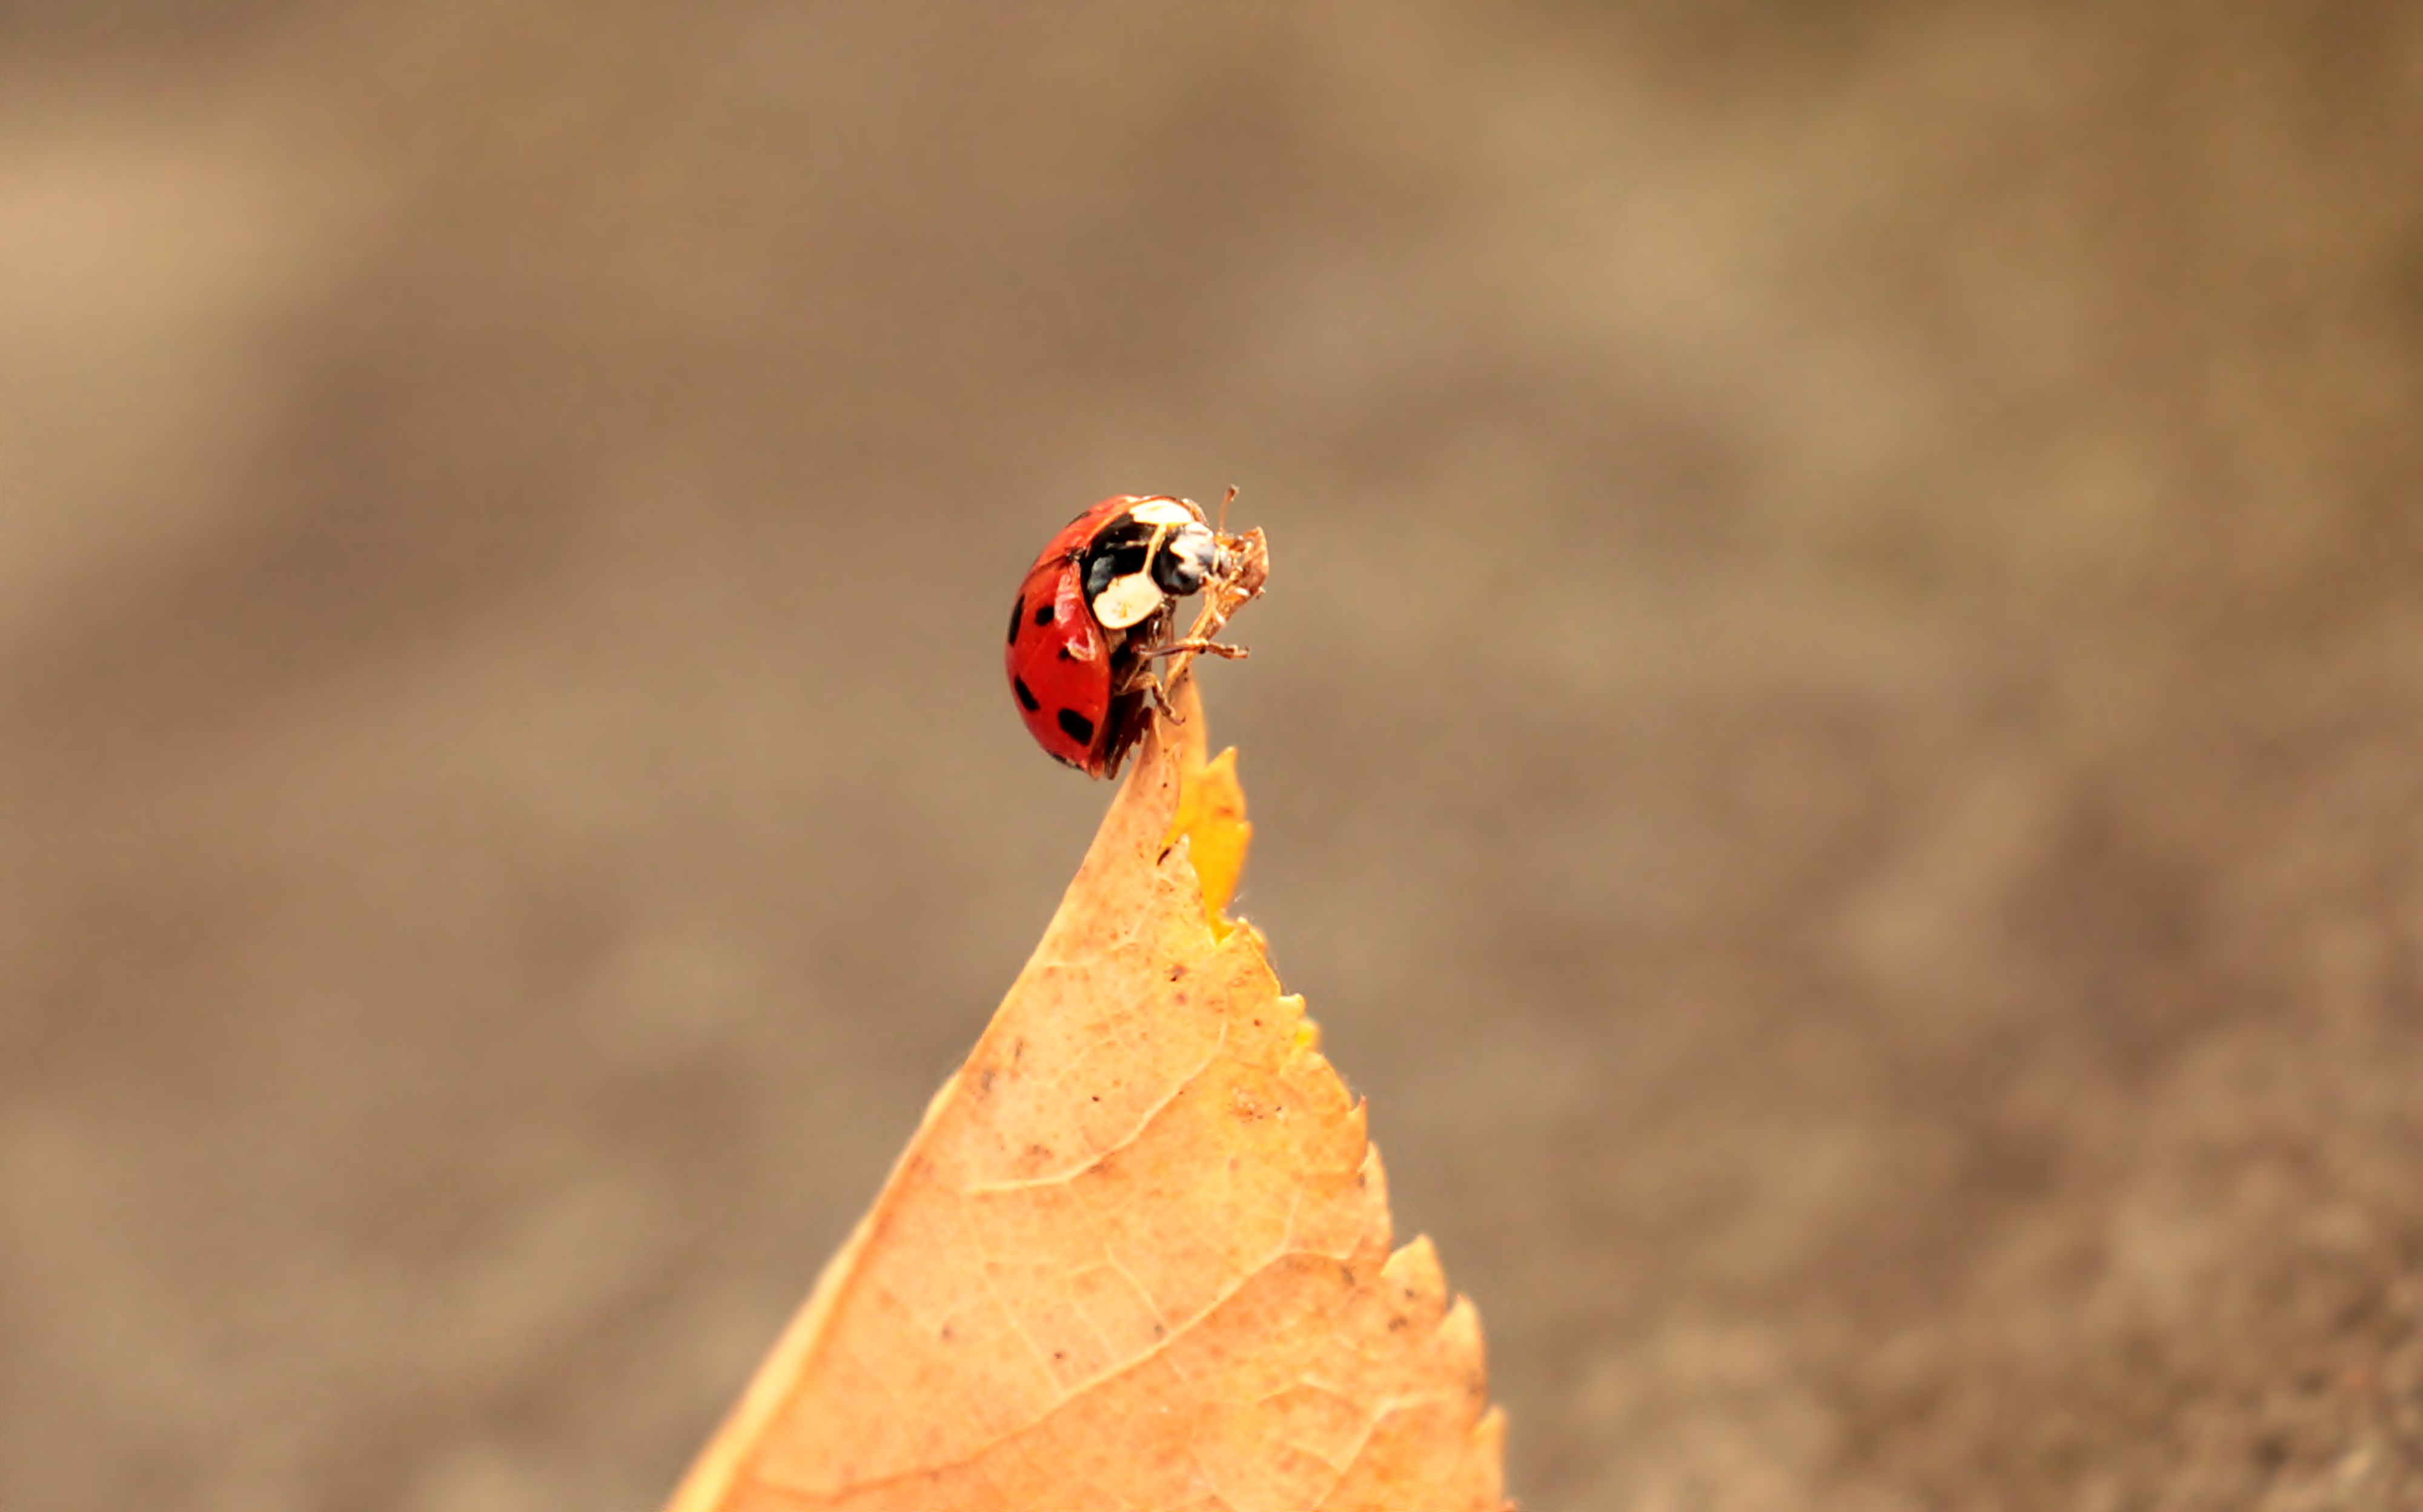 Ladybug and the leaf photo